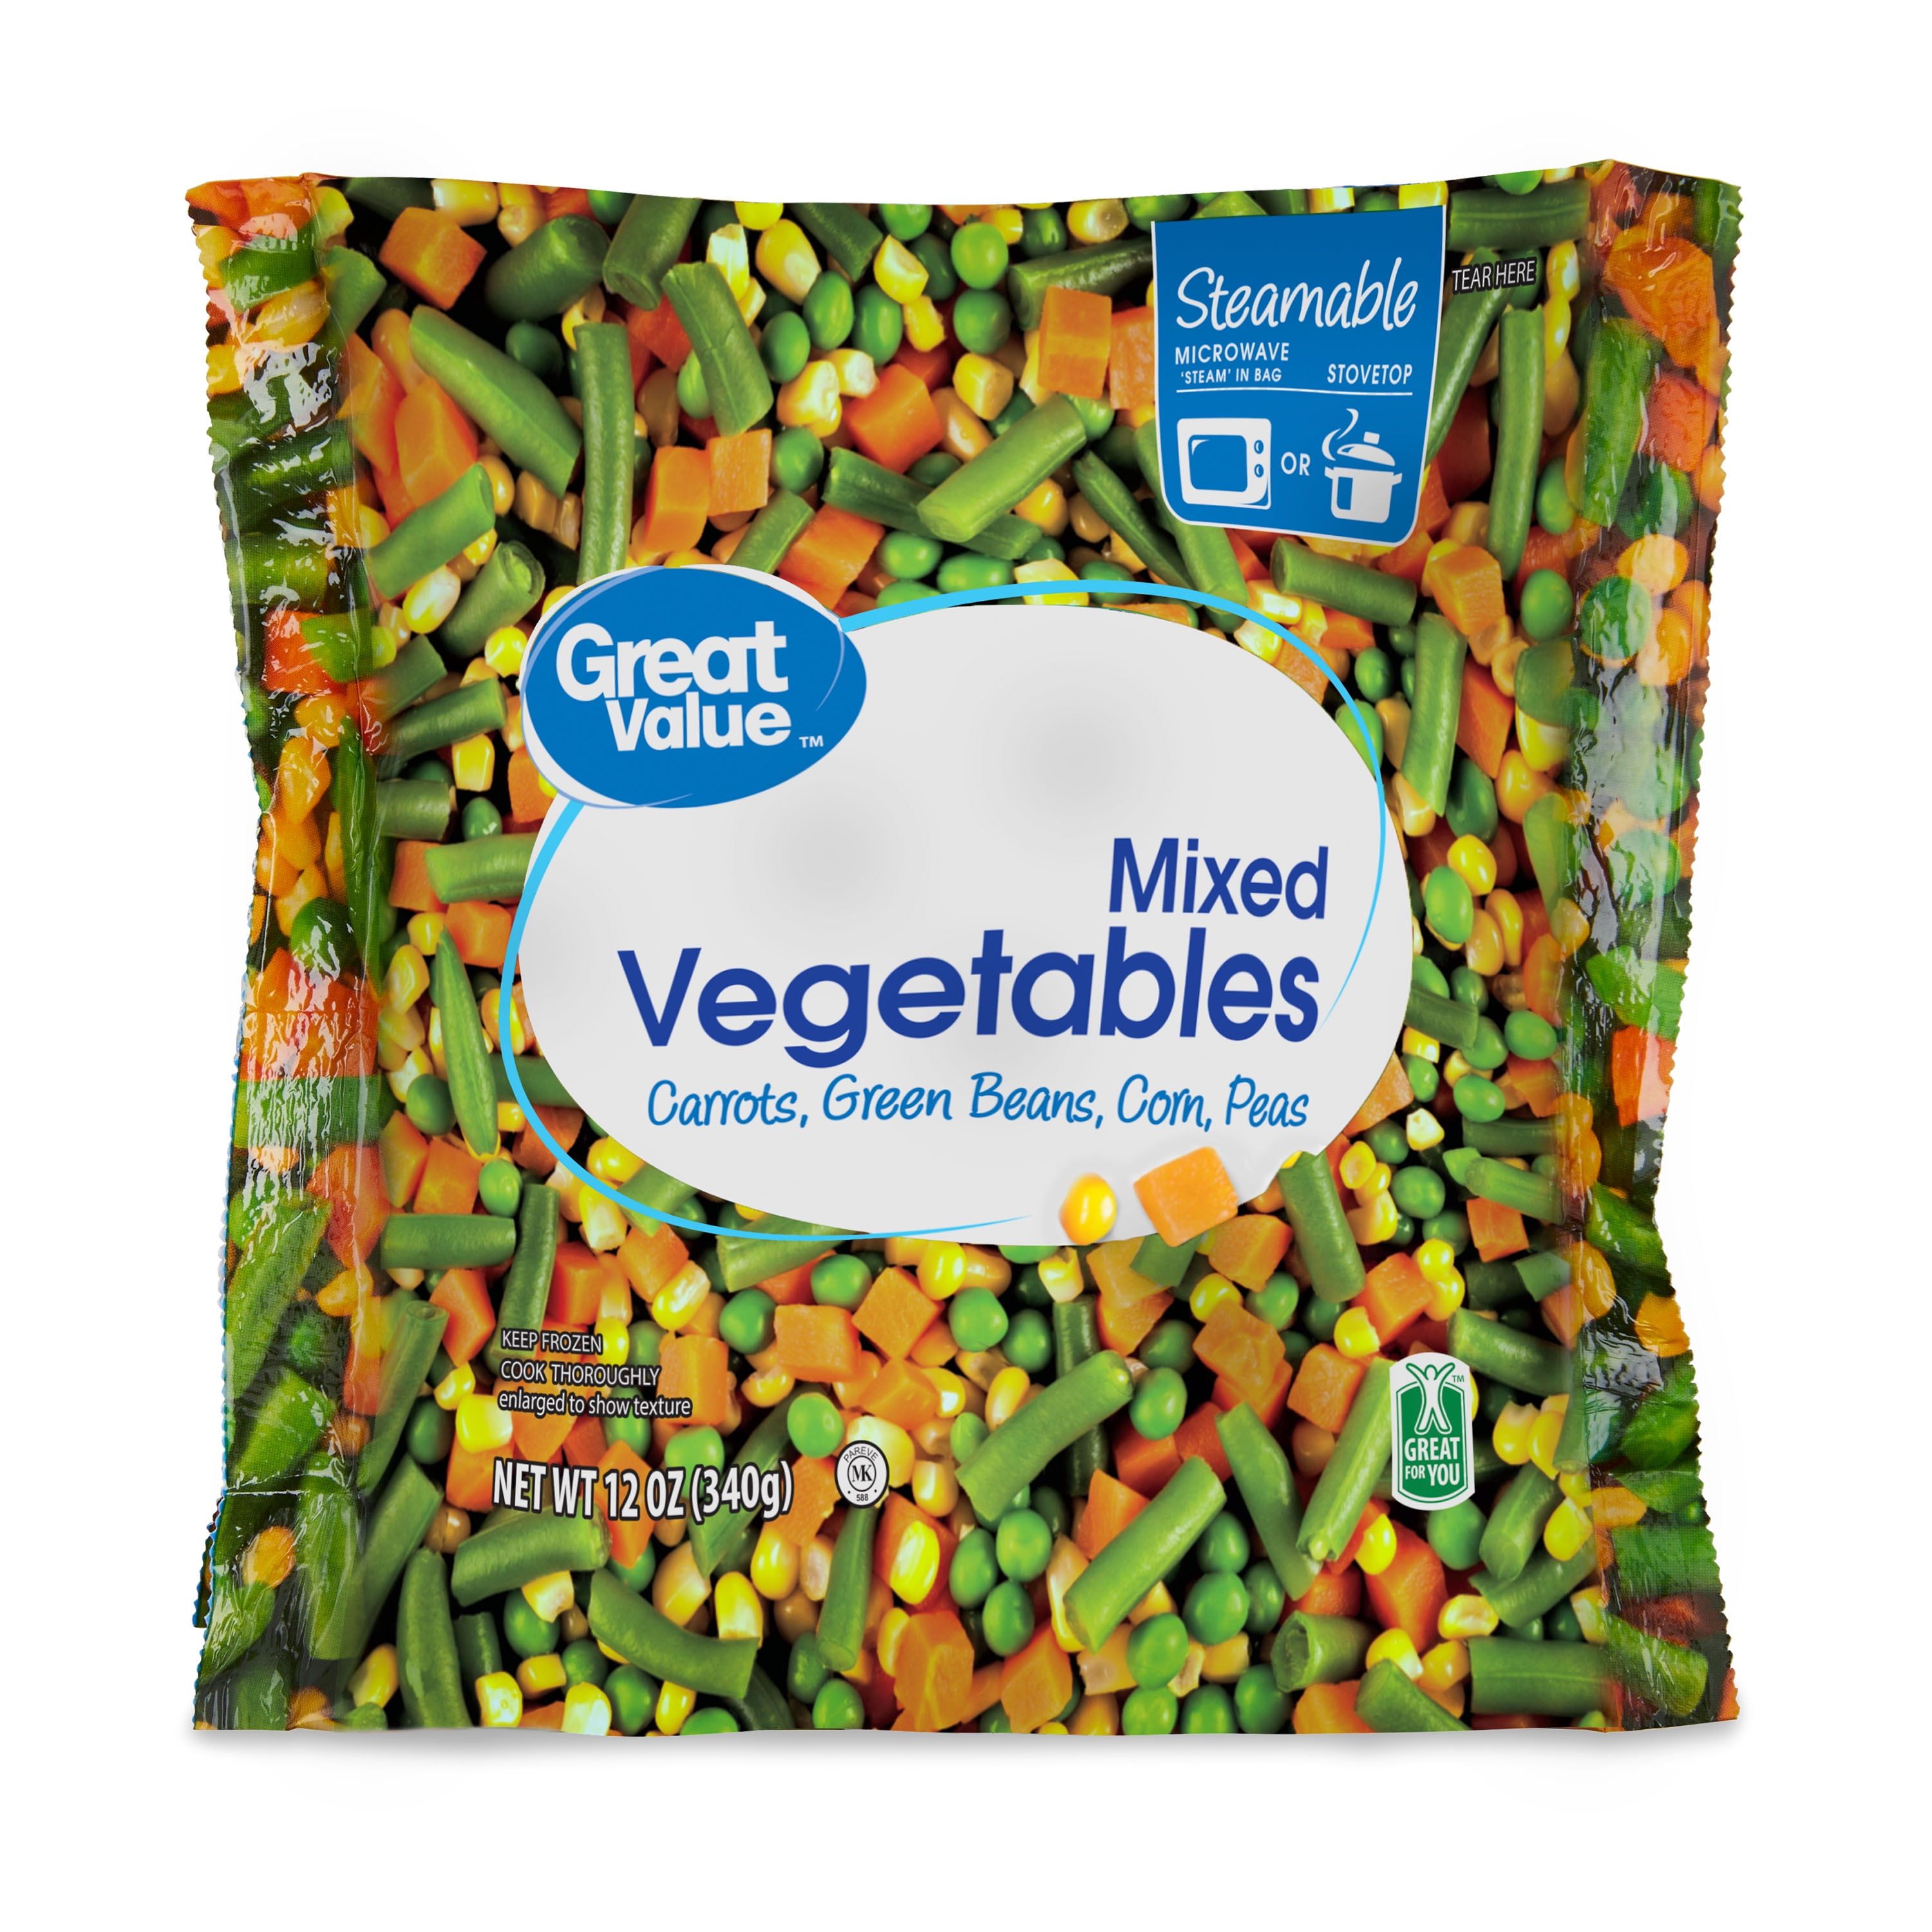 Great Value Frozen Mixed Vegetables 12 oz Steamable Bag 45e6728e 5bc6 4c0e b10c 6f0e4d0d509a.aea17a157dad98def7d90f348814f0ec